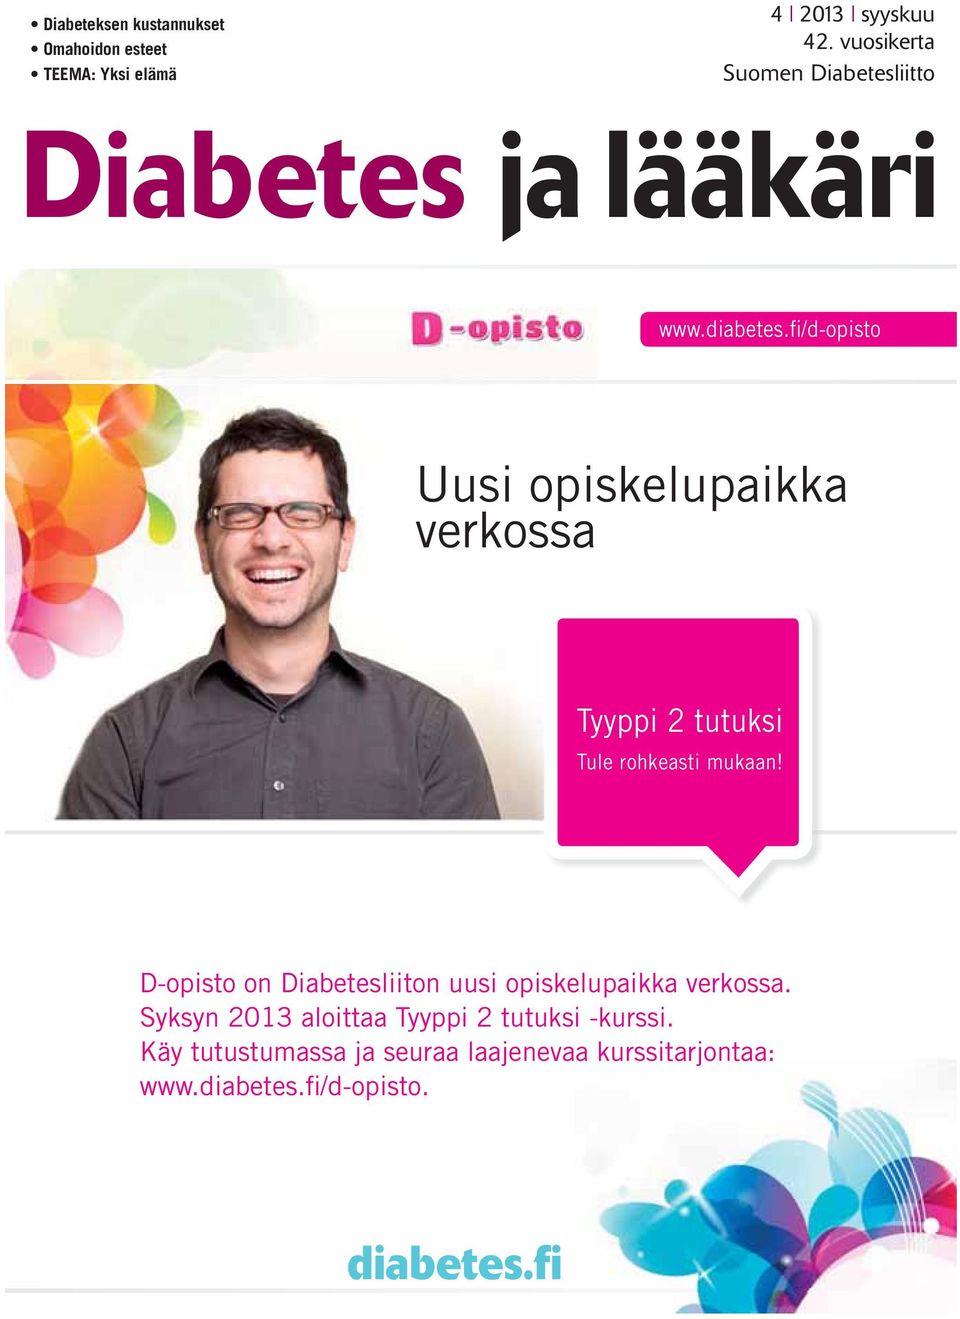 D-opisto on Diabetesliiton uusi opiskelupaikka verkossa.